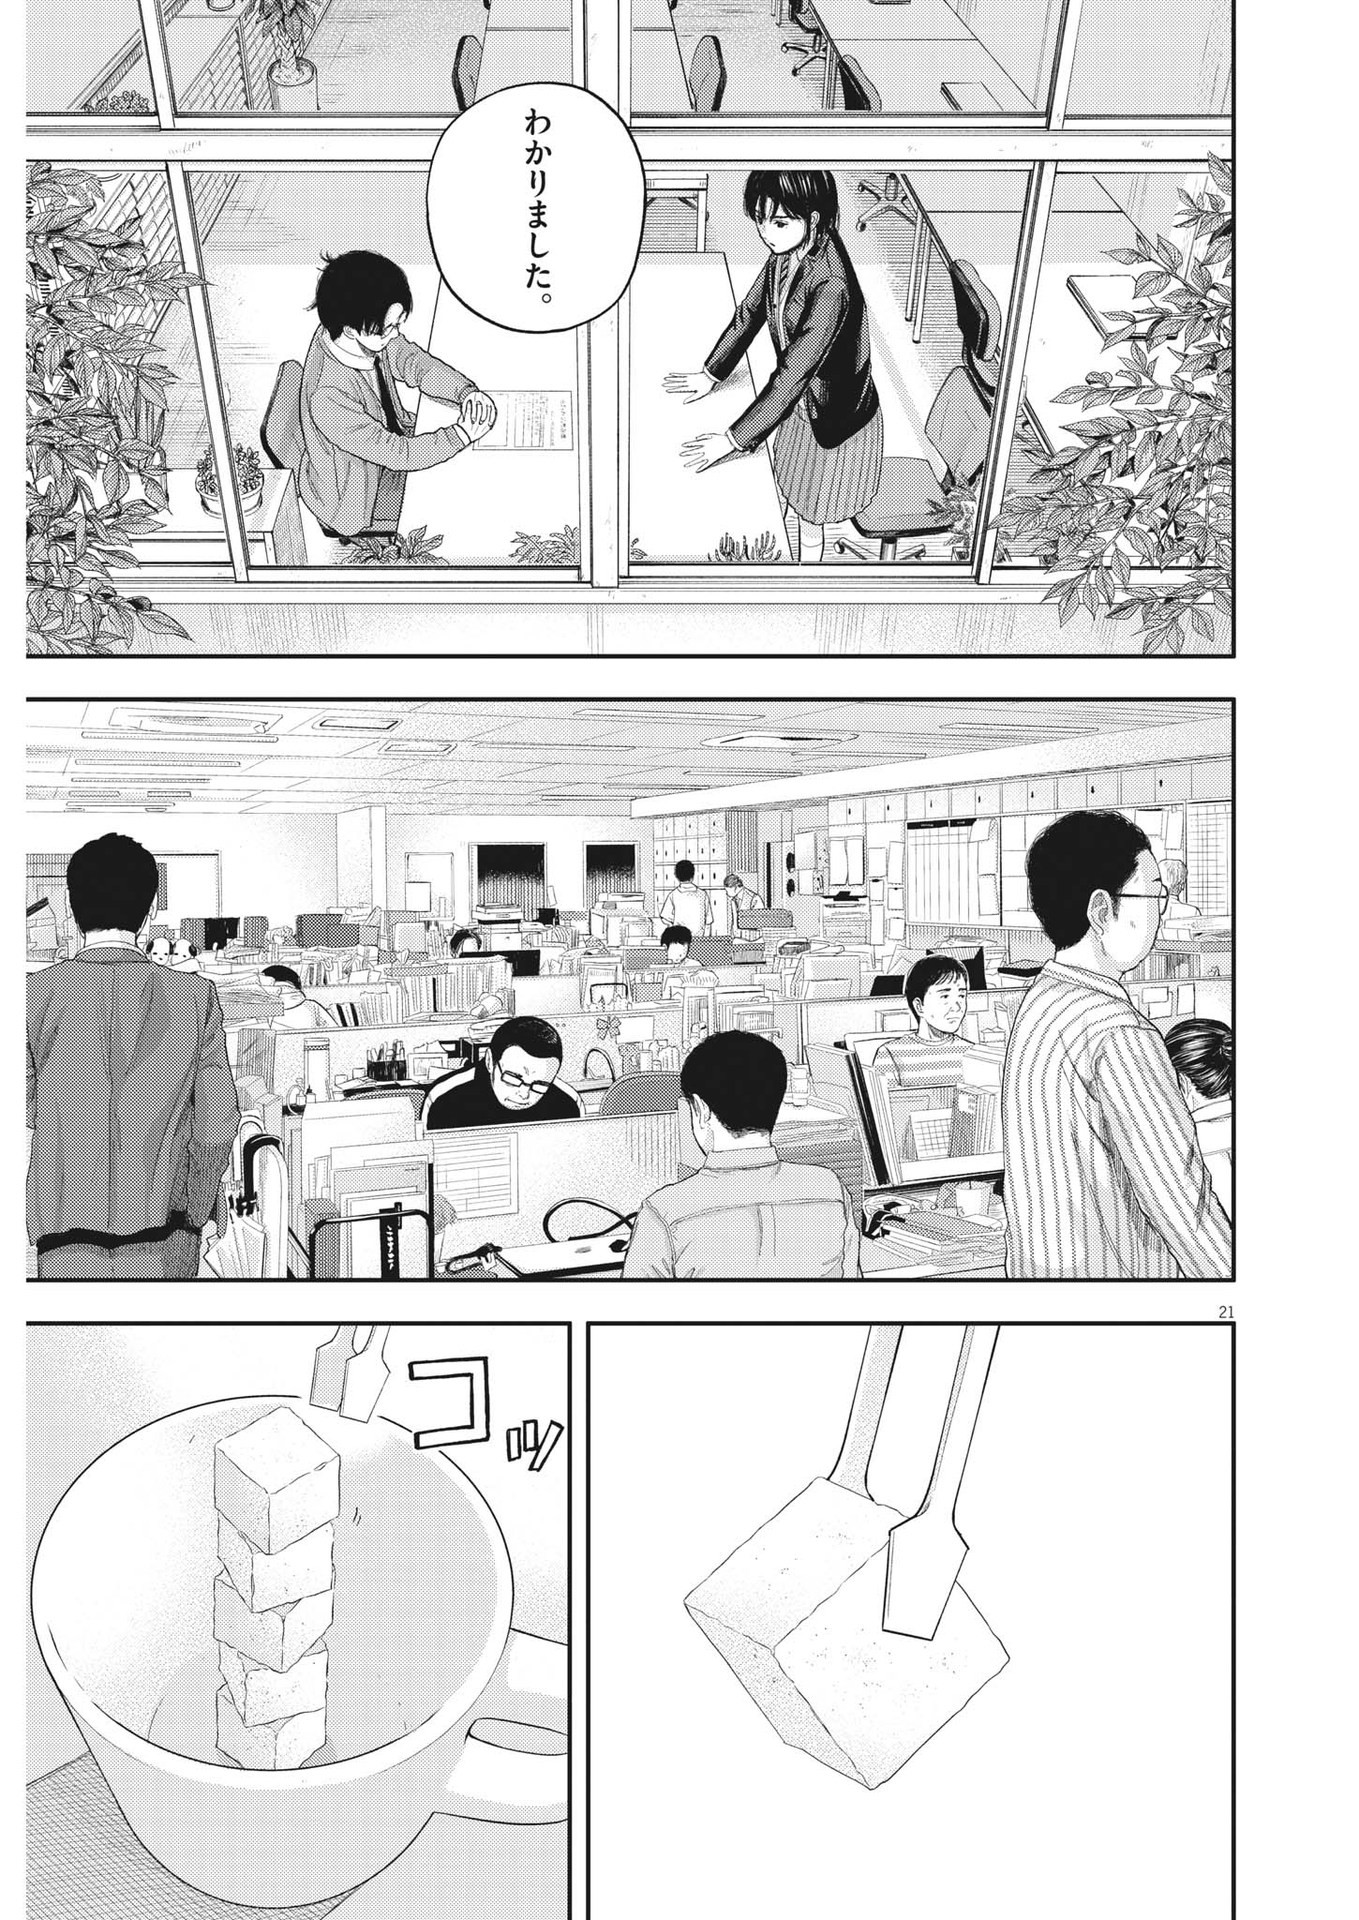 Yumenashi-sensei no Shinroshidou - Chapter 1 - Page 21